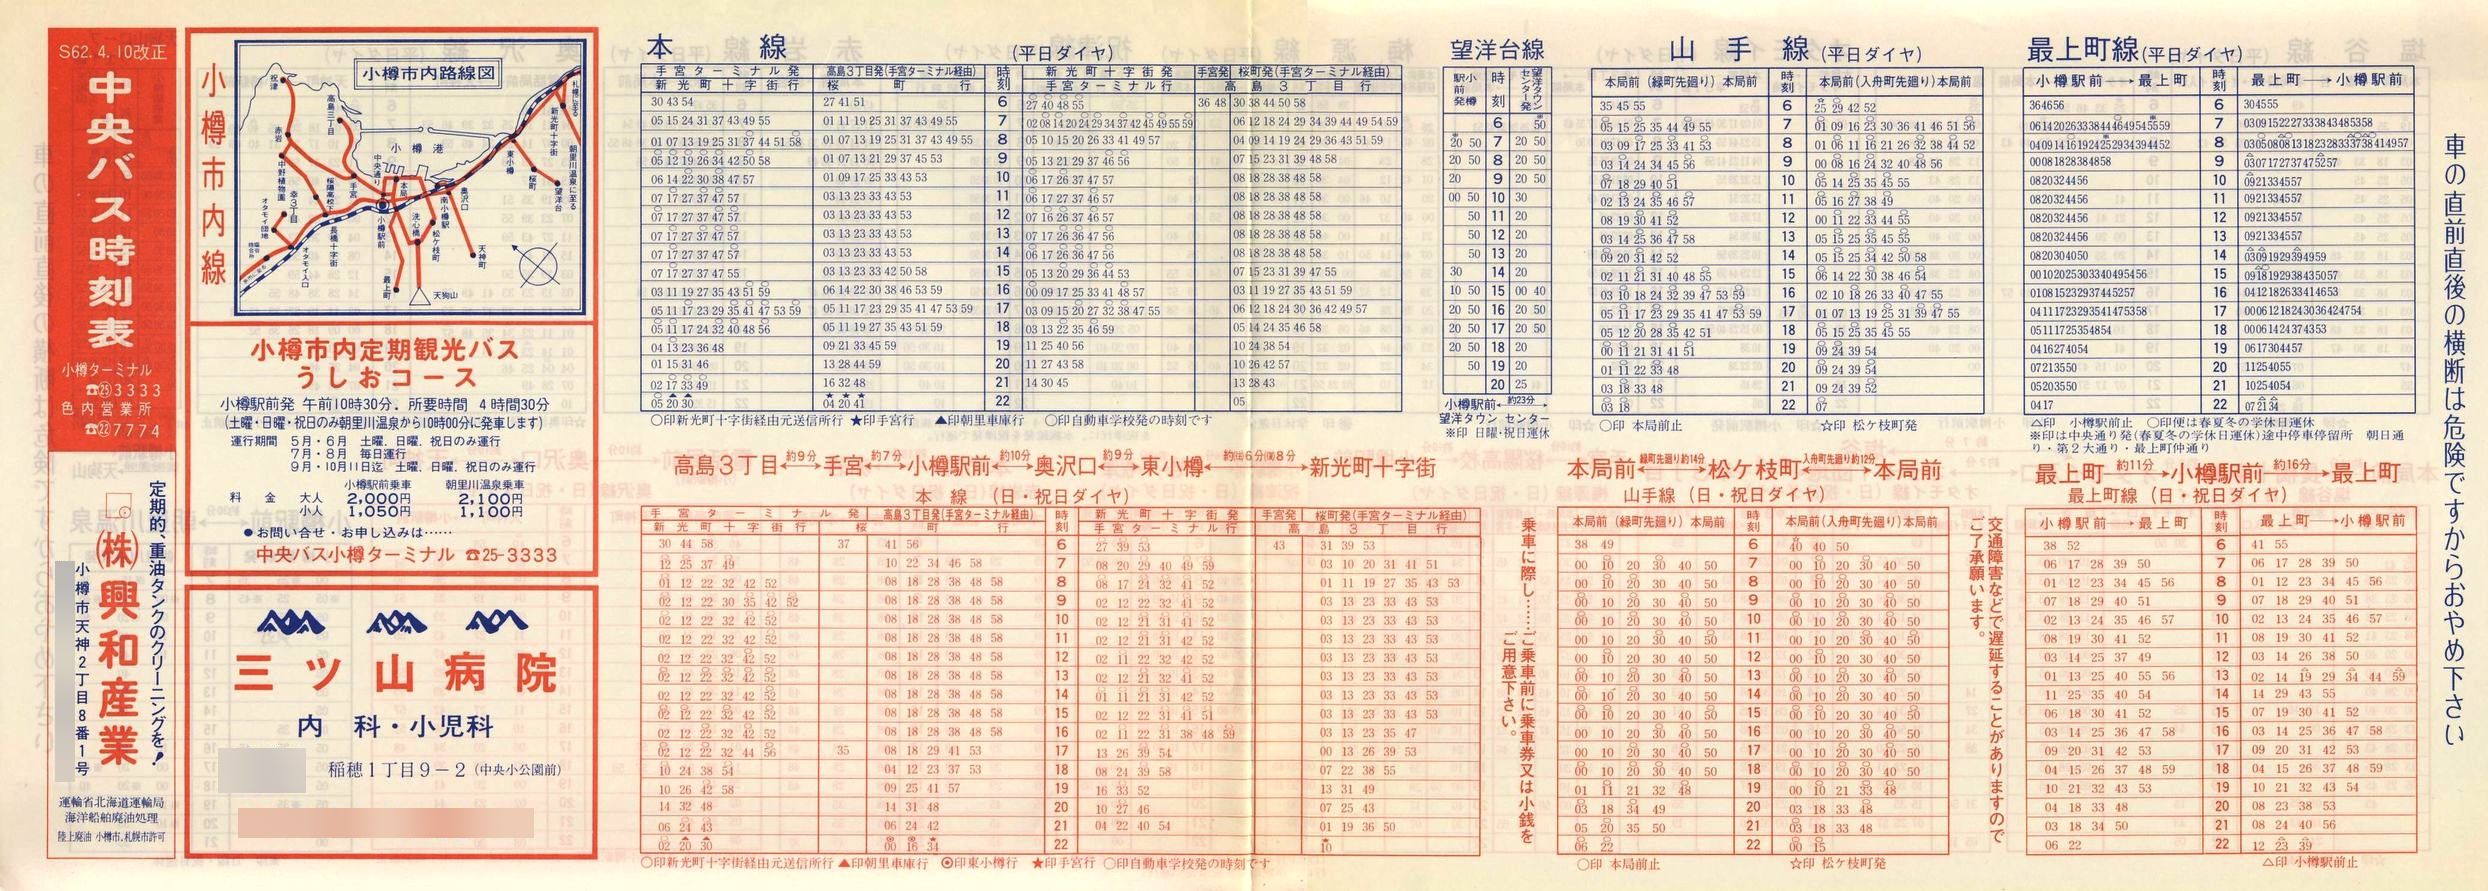 1987-04-10改正_北海道中央バス(小樽)_小樽市内線時刻表表面